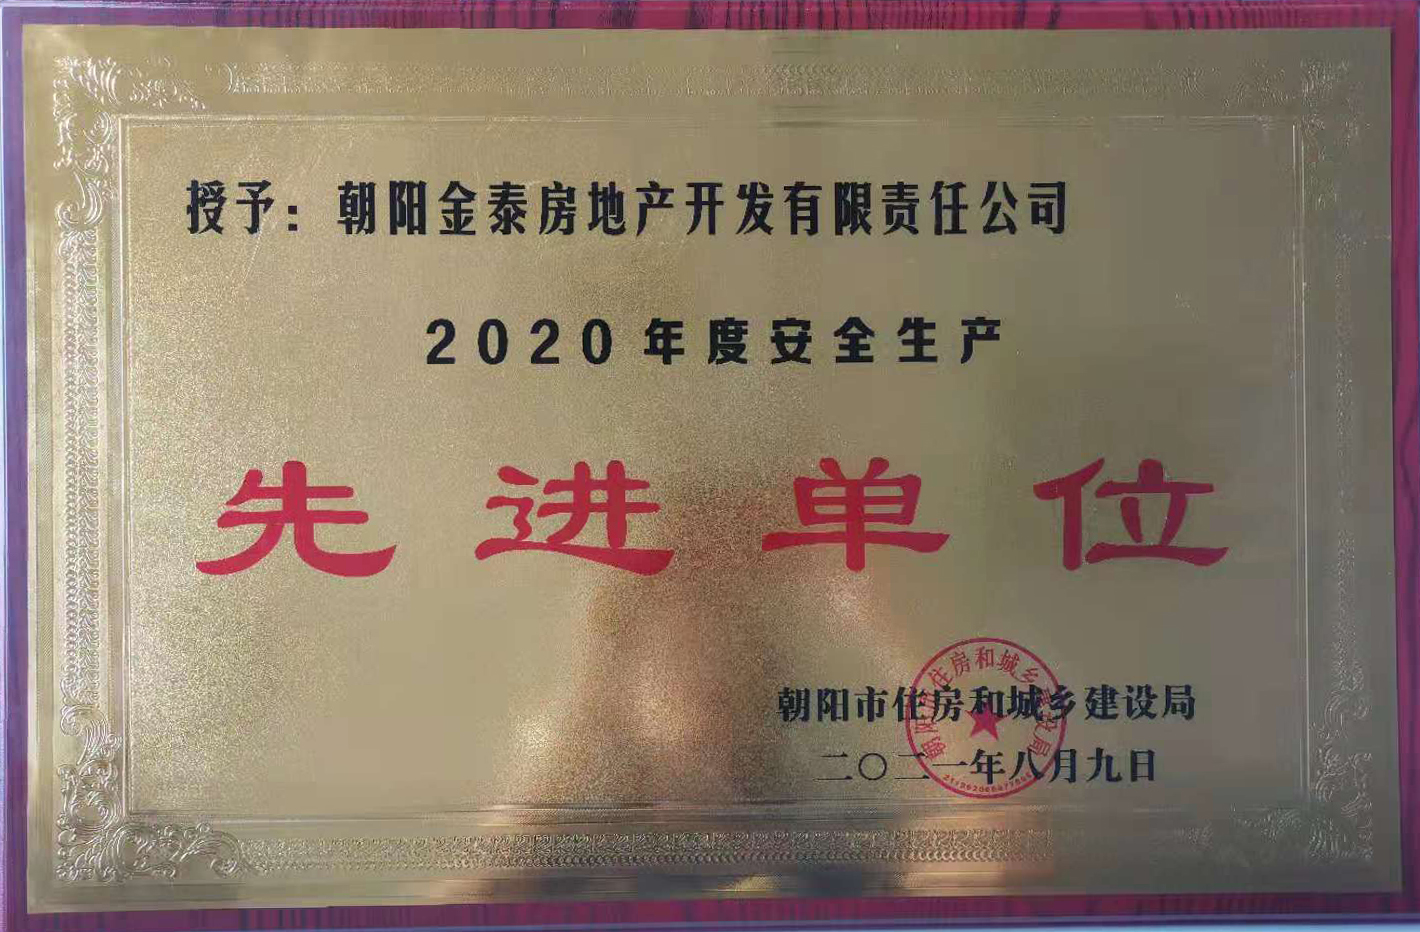 金泰地产被评为“2020年度安全生产先进单位”(图1)